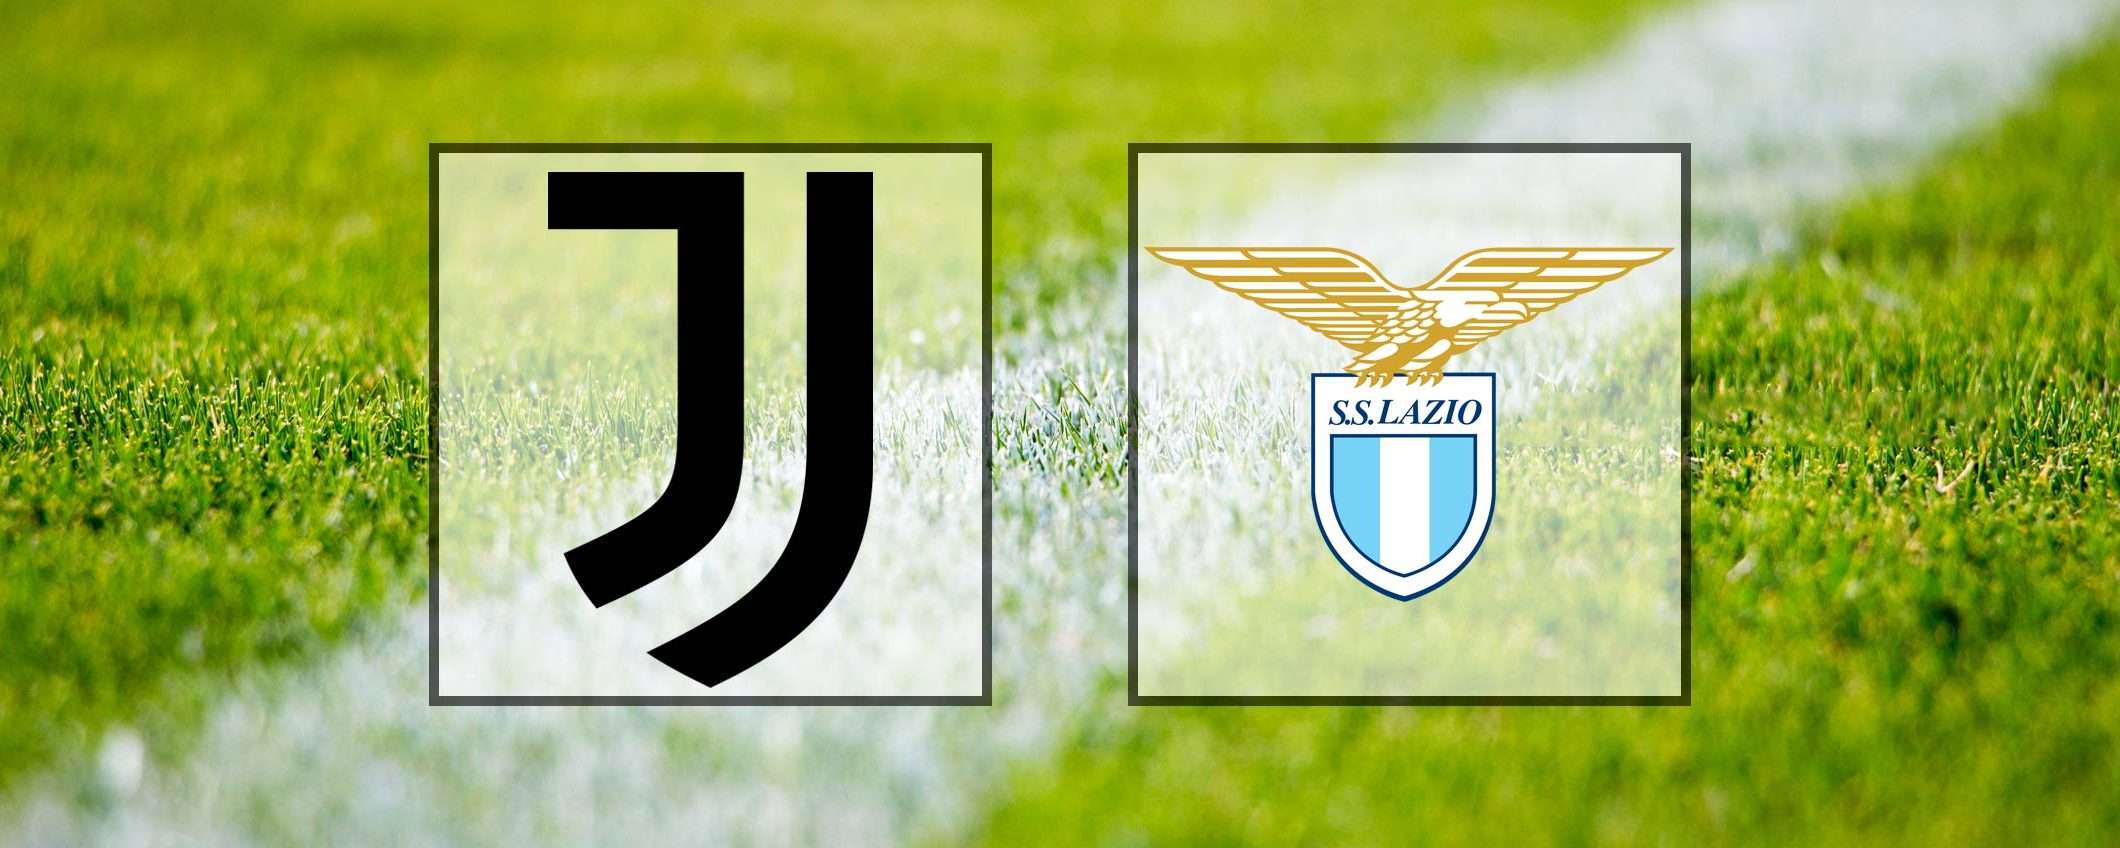 Come vedere Juventus-Lazio in streaming (Serie A)